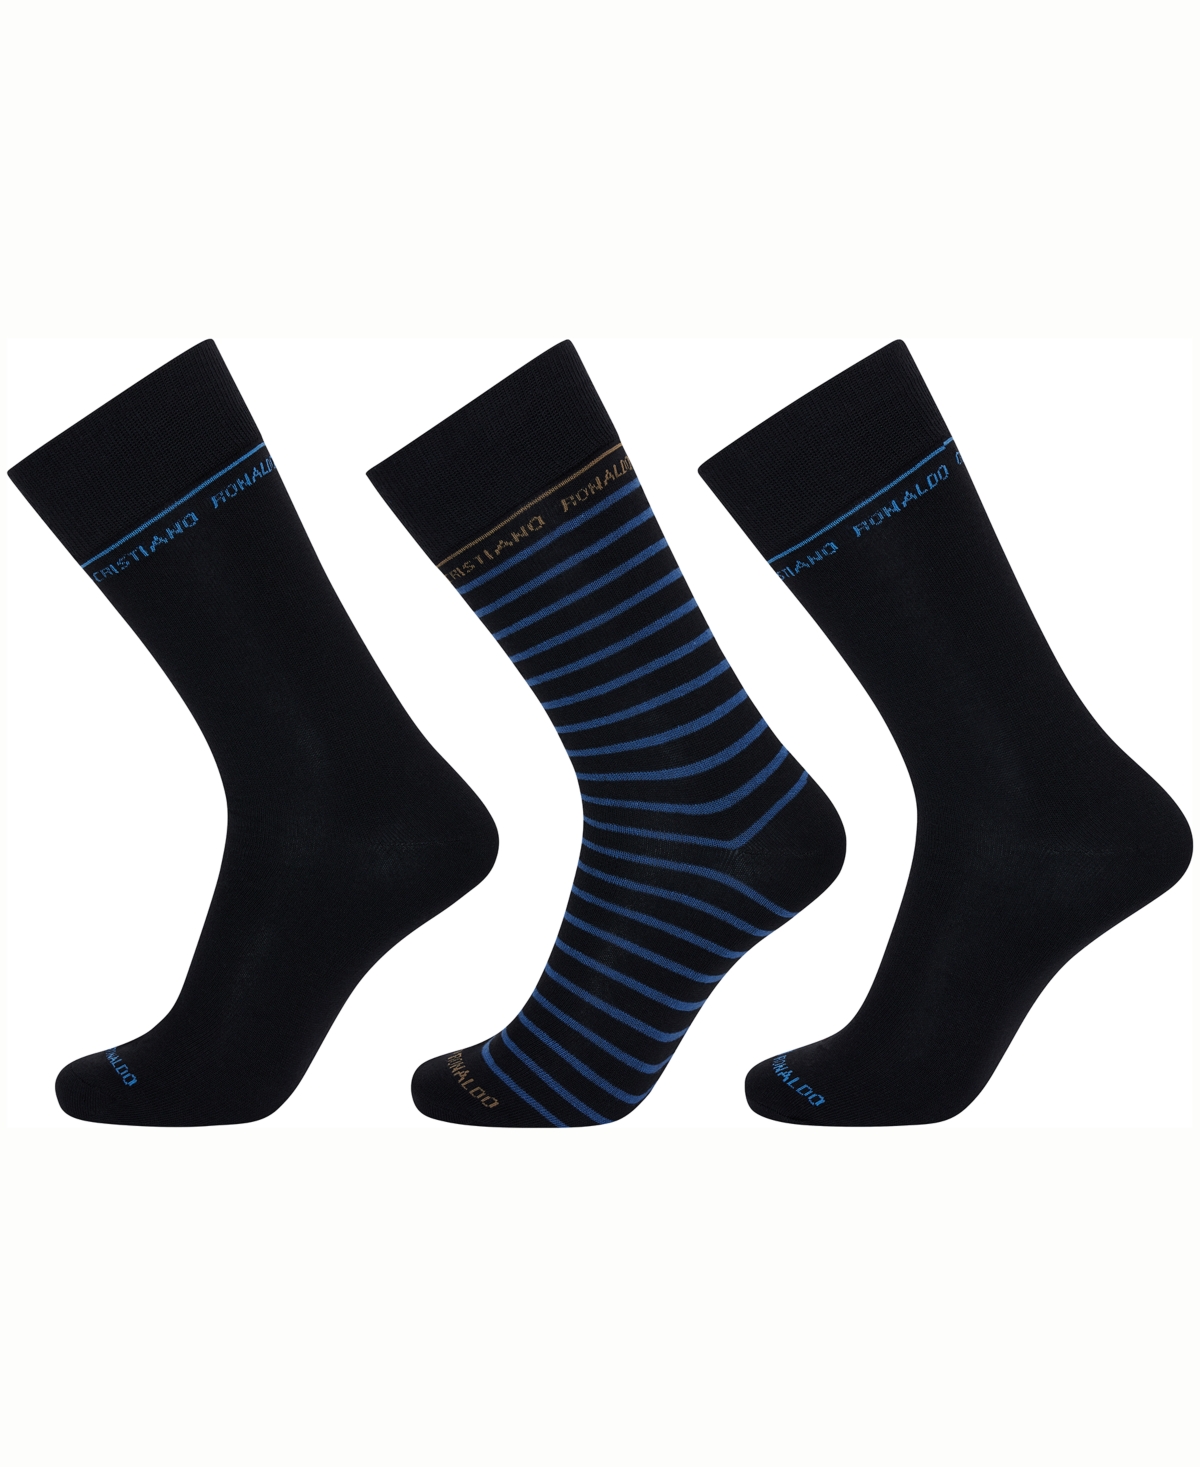 Cr7 Men's Fashion Socks, Pack Of 3 In Black,blue,gray